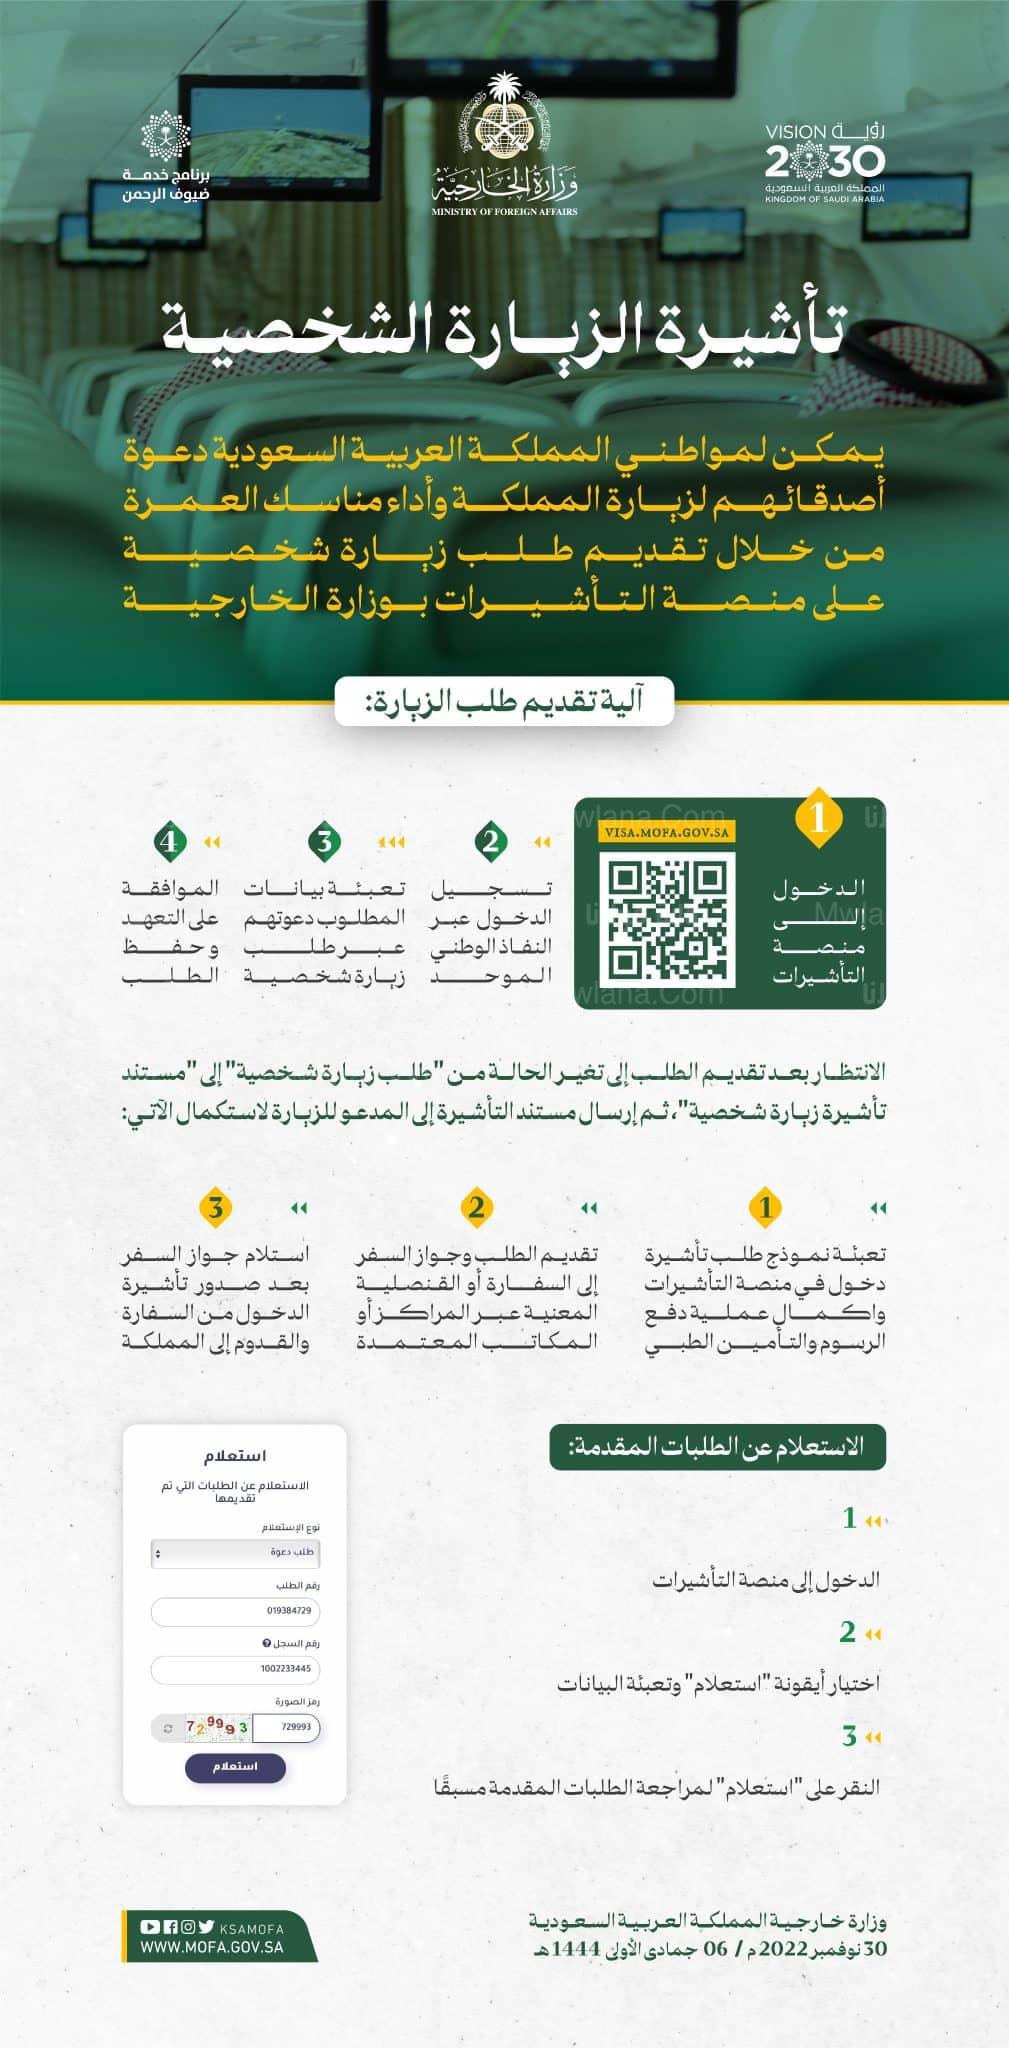 طريقة طلب الزيارة الشخصية في السعودية 2022-2023 إلكترونيا